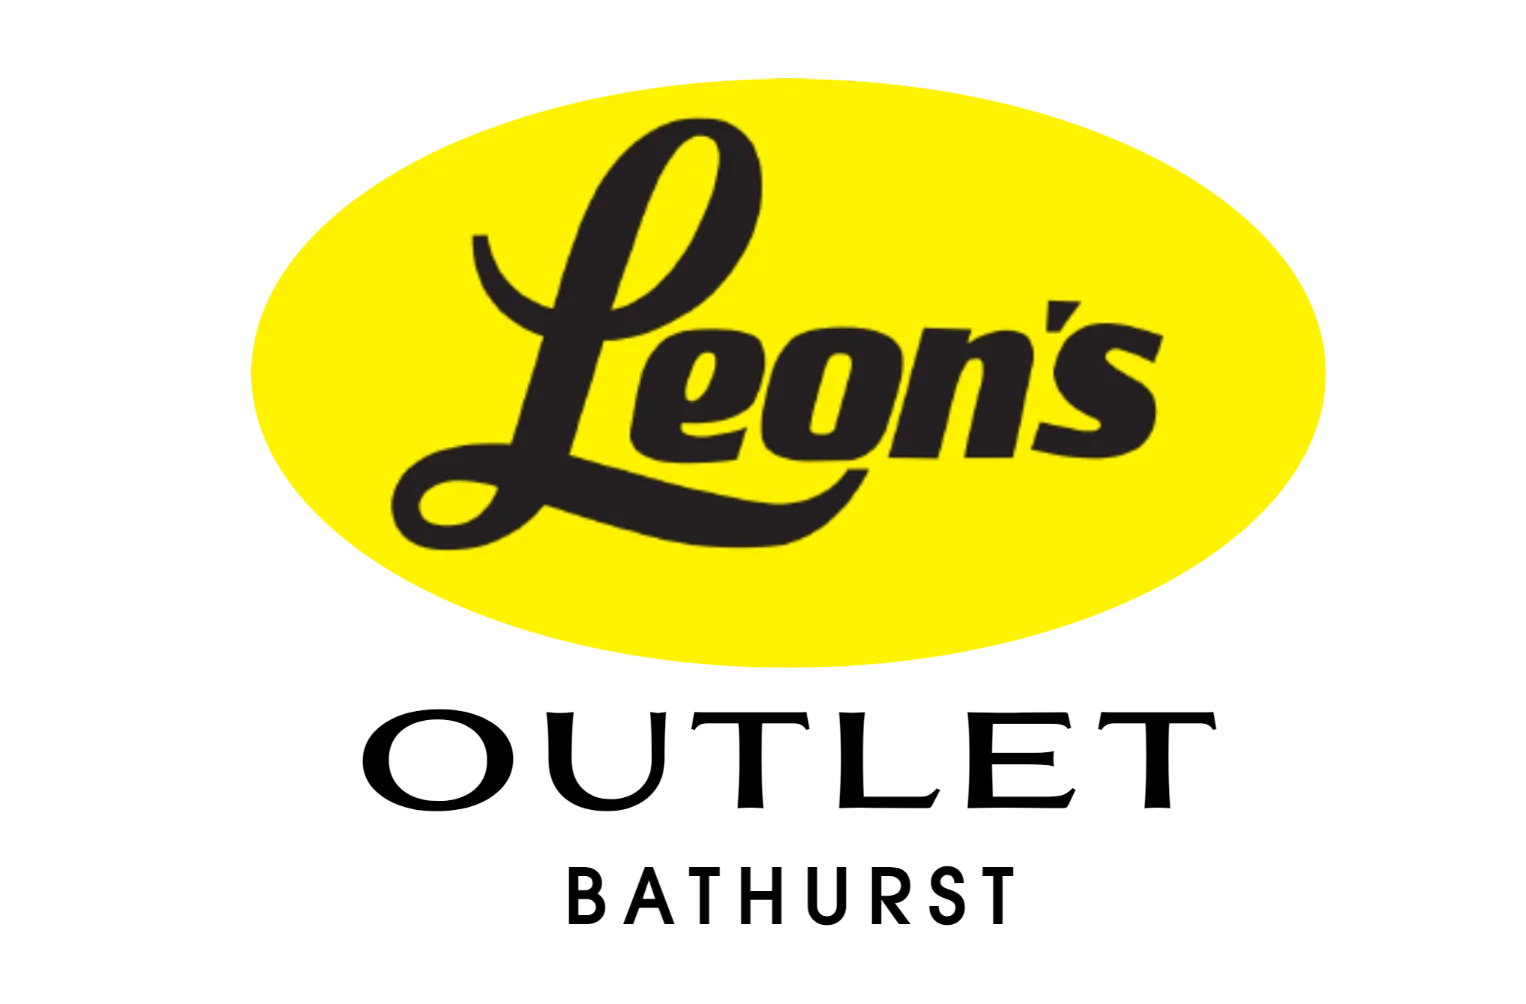 Leon's Outlet Bathurst